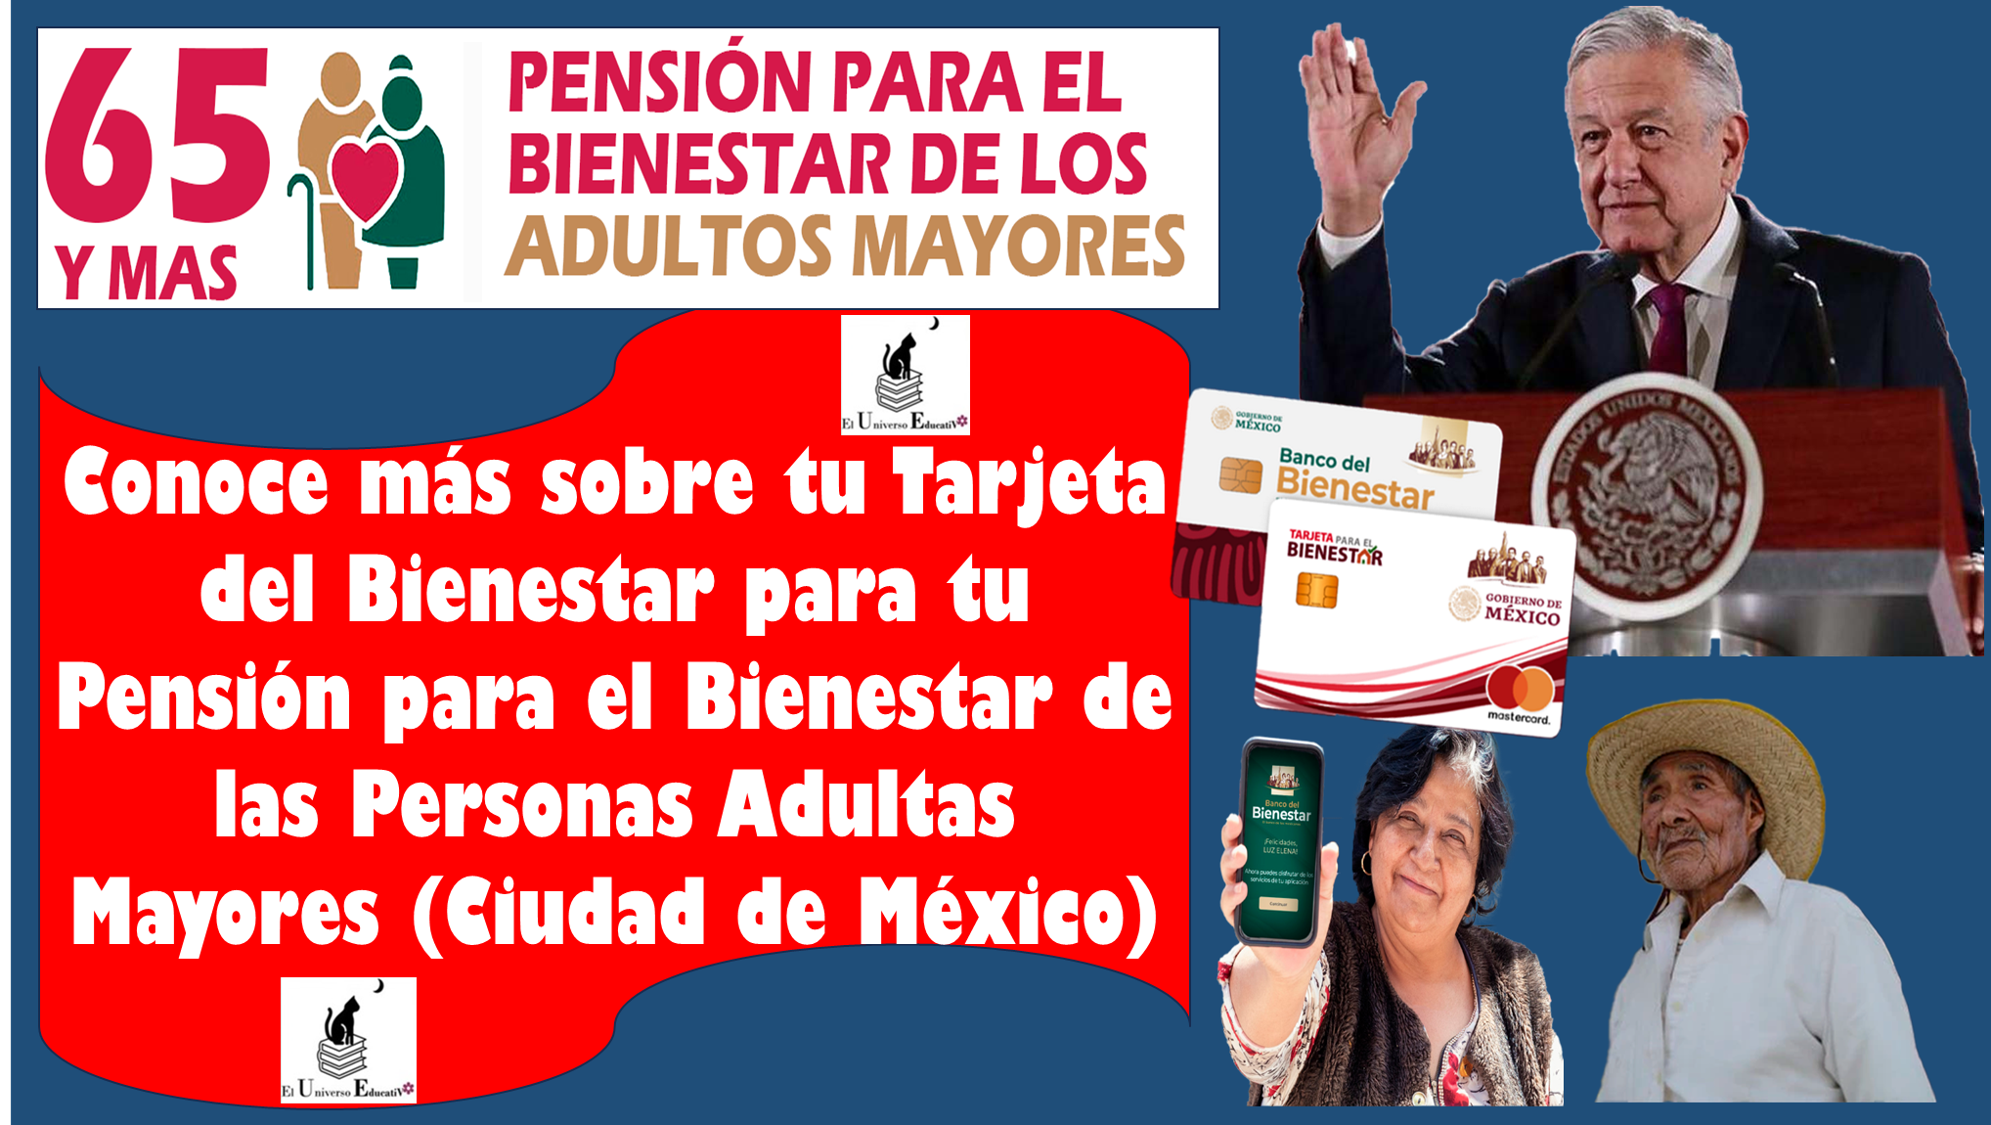 Conoce más sobre tu Tarjeta del Bienestar para tu Pensión para el Bienestar de las Personas Adultas Mayores (Ciudad de México)